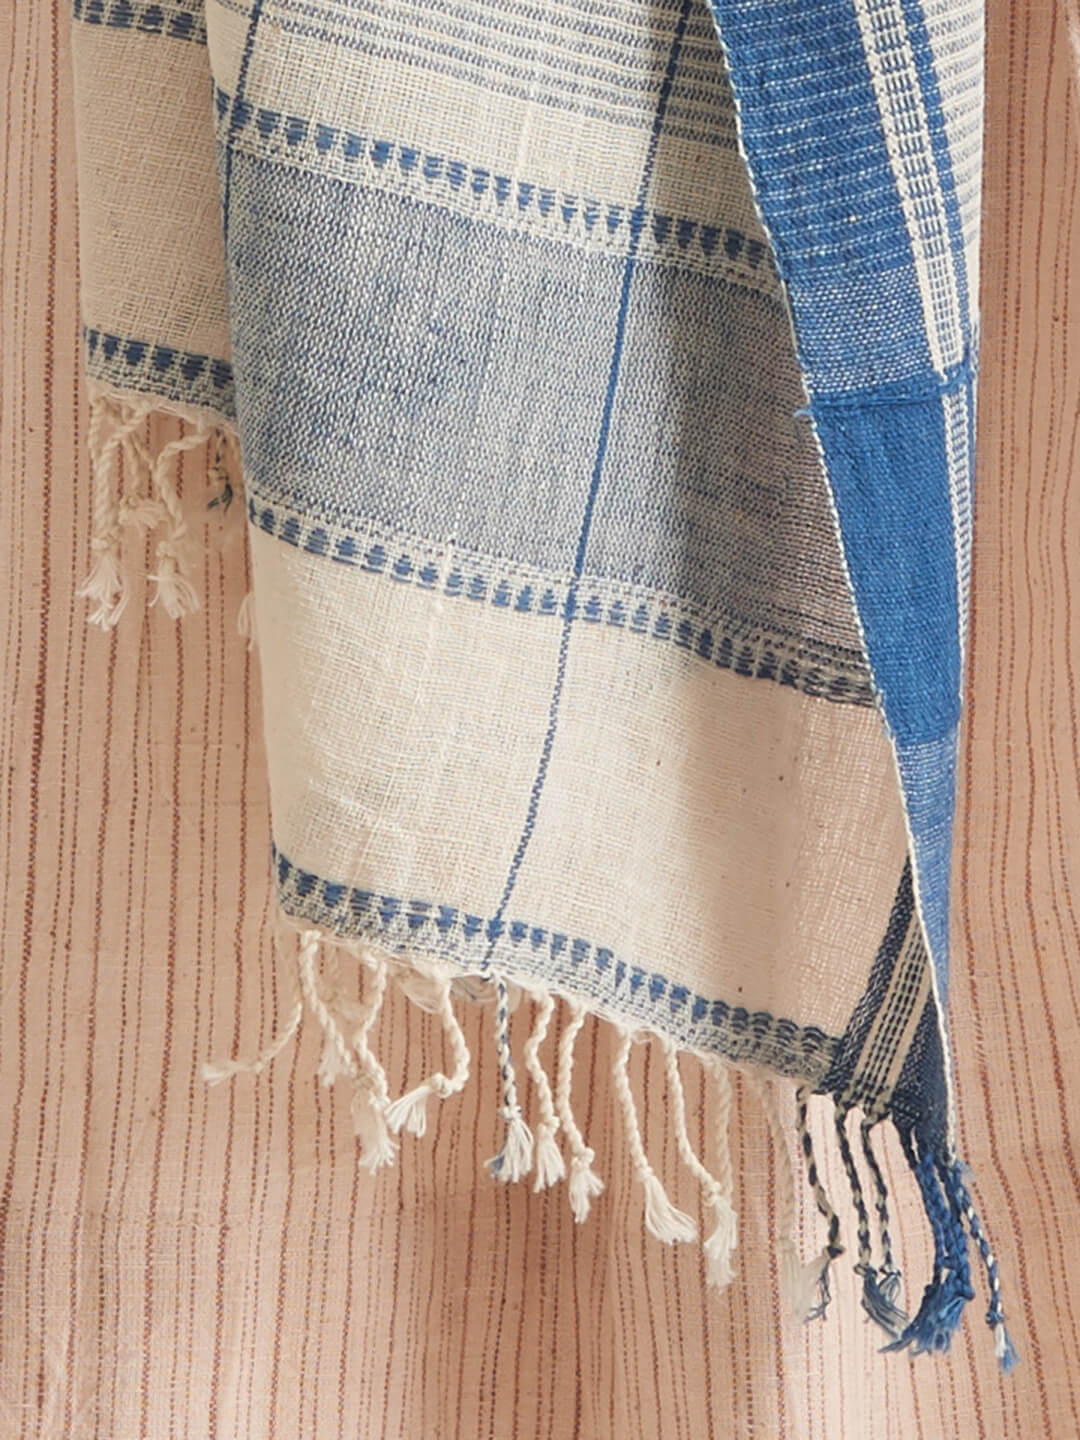 Indigo weave design